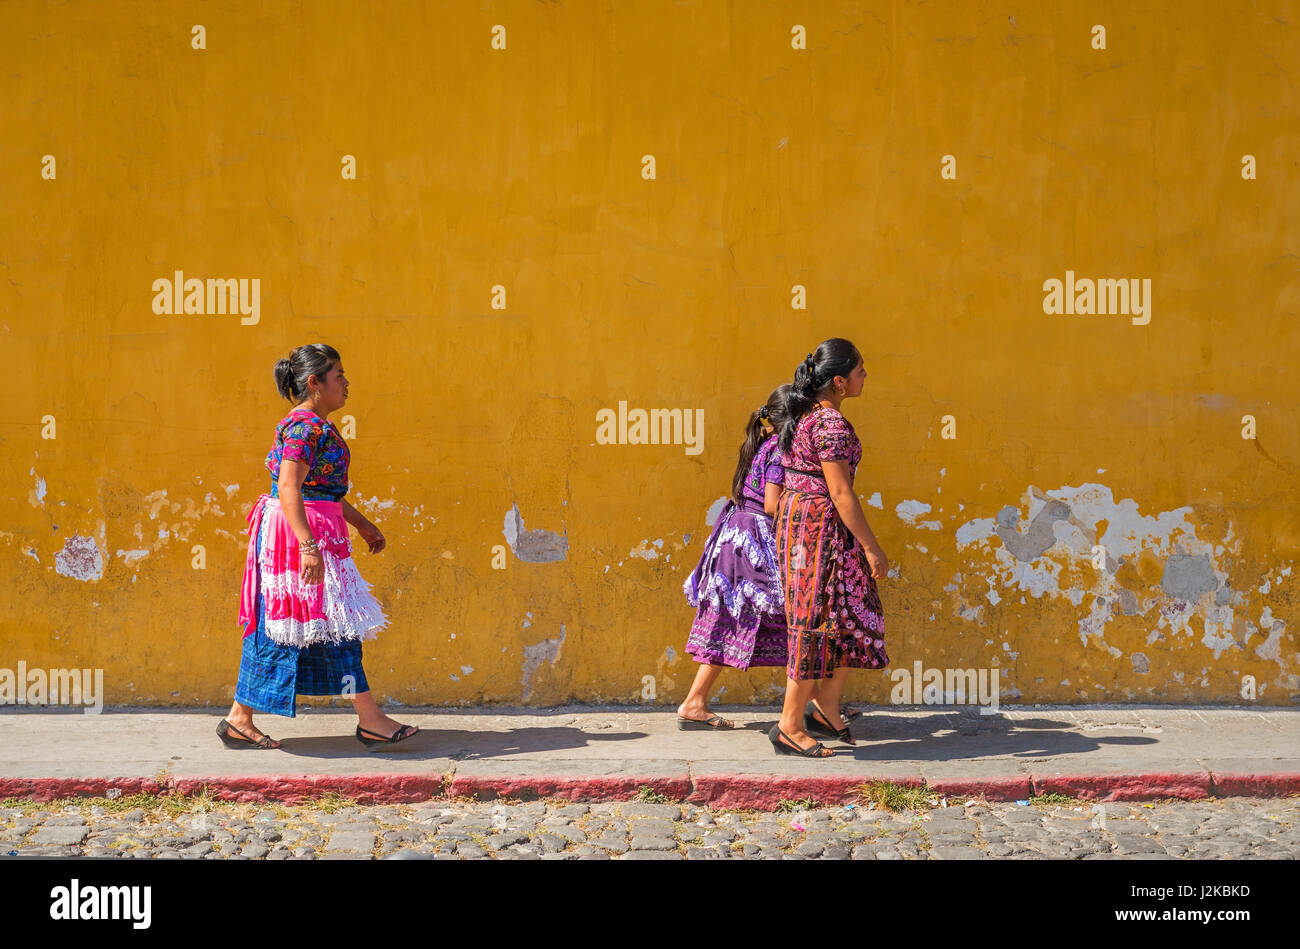 Indigeni donne Maya a piedi in strada con una colorata giallo a parete come sfondo nel centro della città di Antigua, Guatemala. Foto Stock